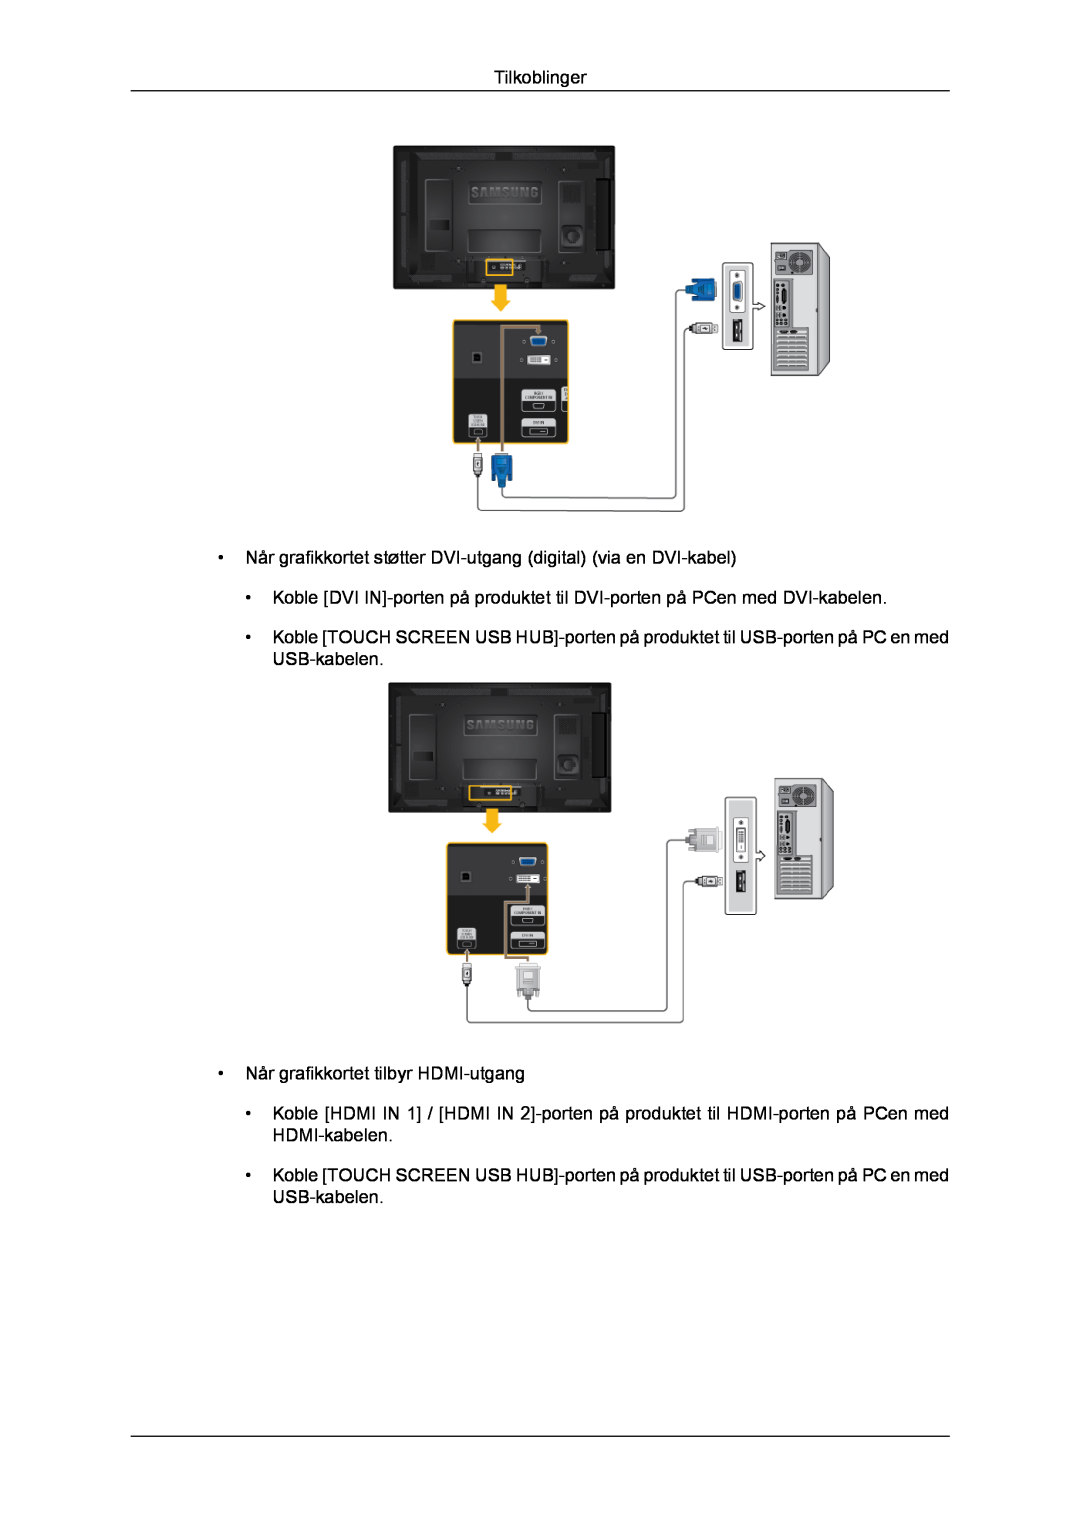 Samsung LH40CRPMBD/EN, LH46CRPMBD/EN manual Tilkoblinger, Når grafikkortet støtter DVI-utgang digital via en DVI-kabel 